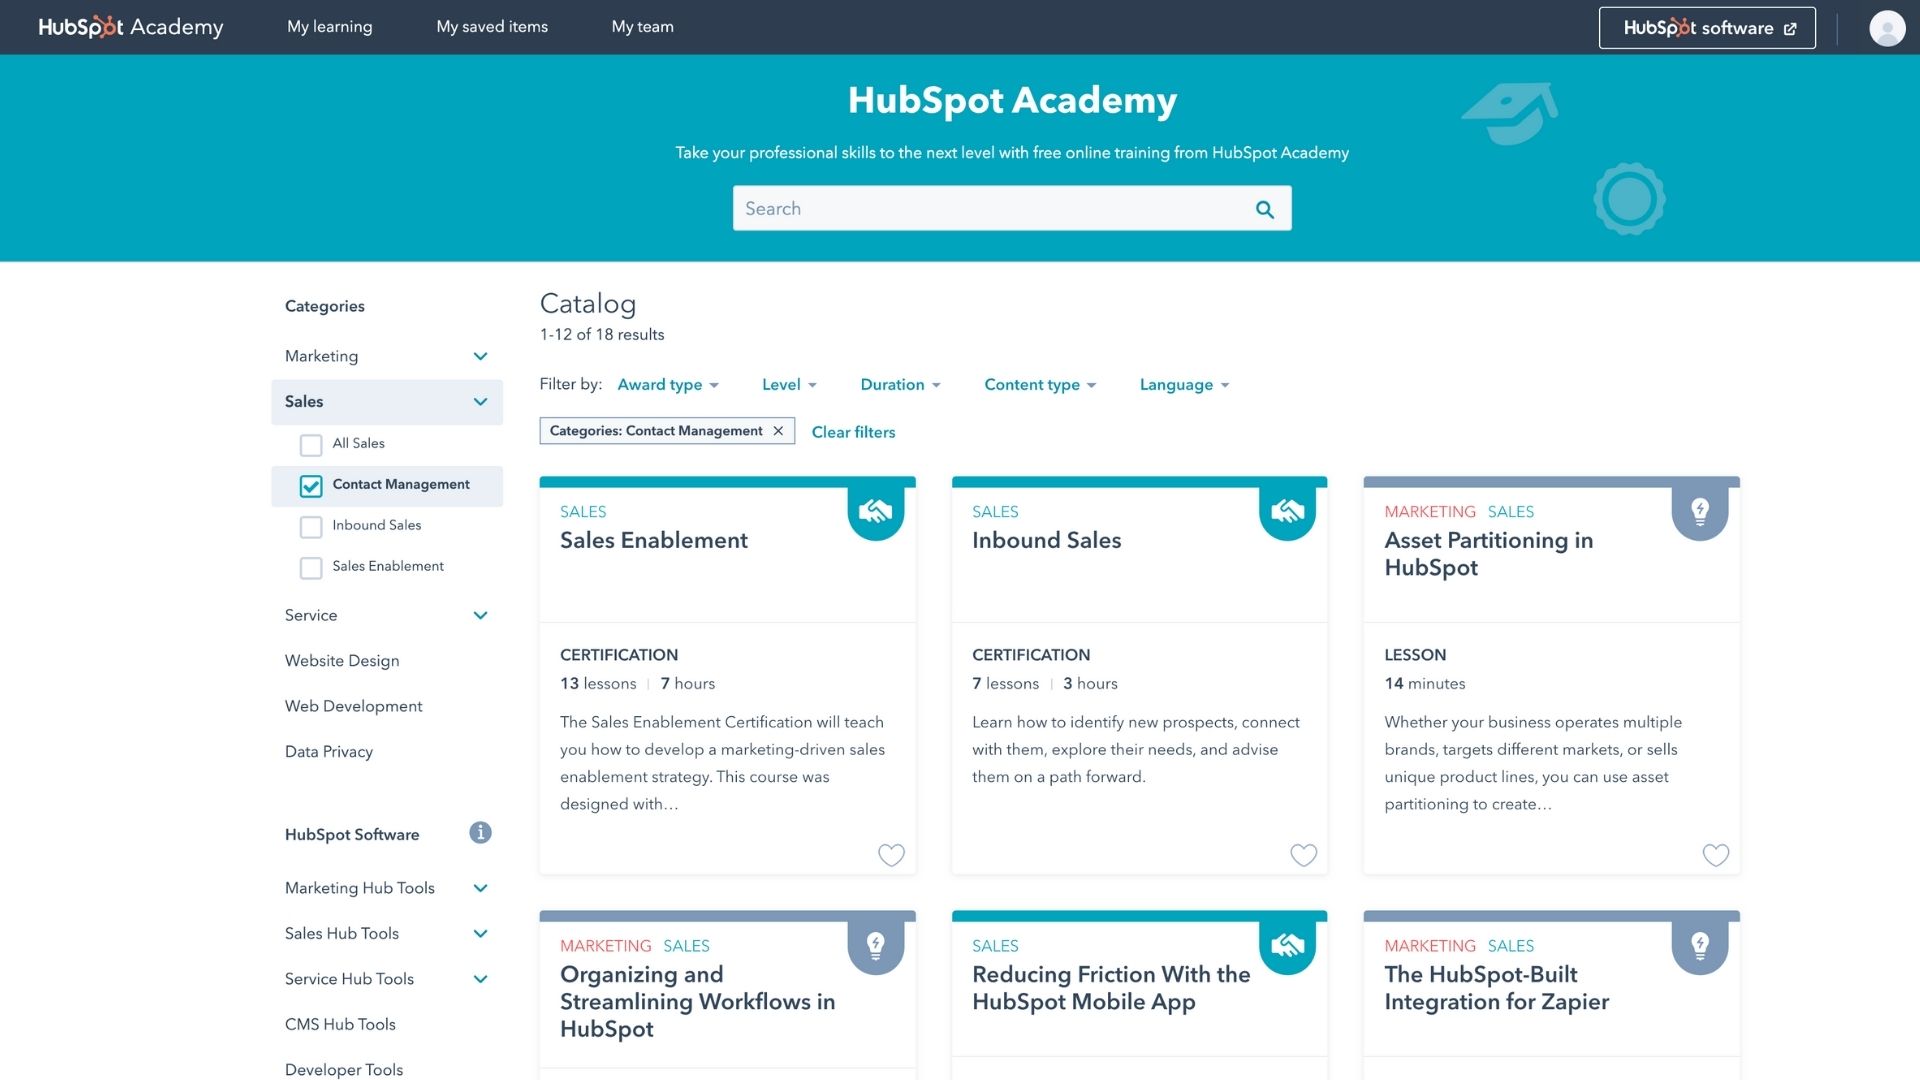 The HubSpot Academy